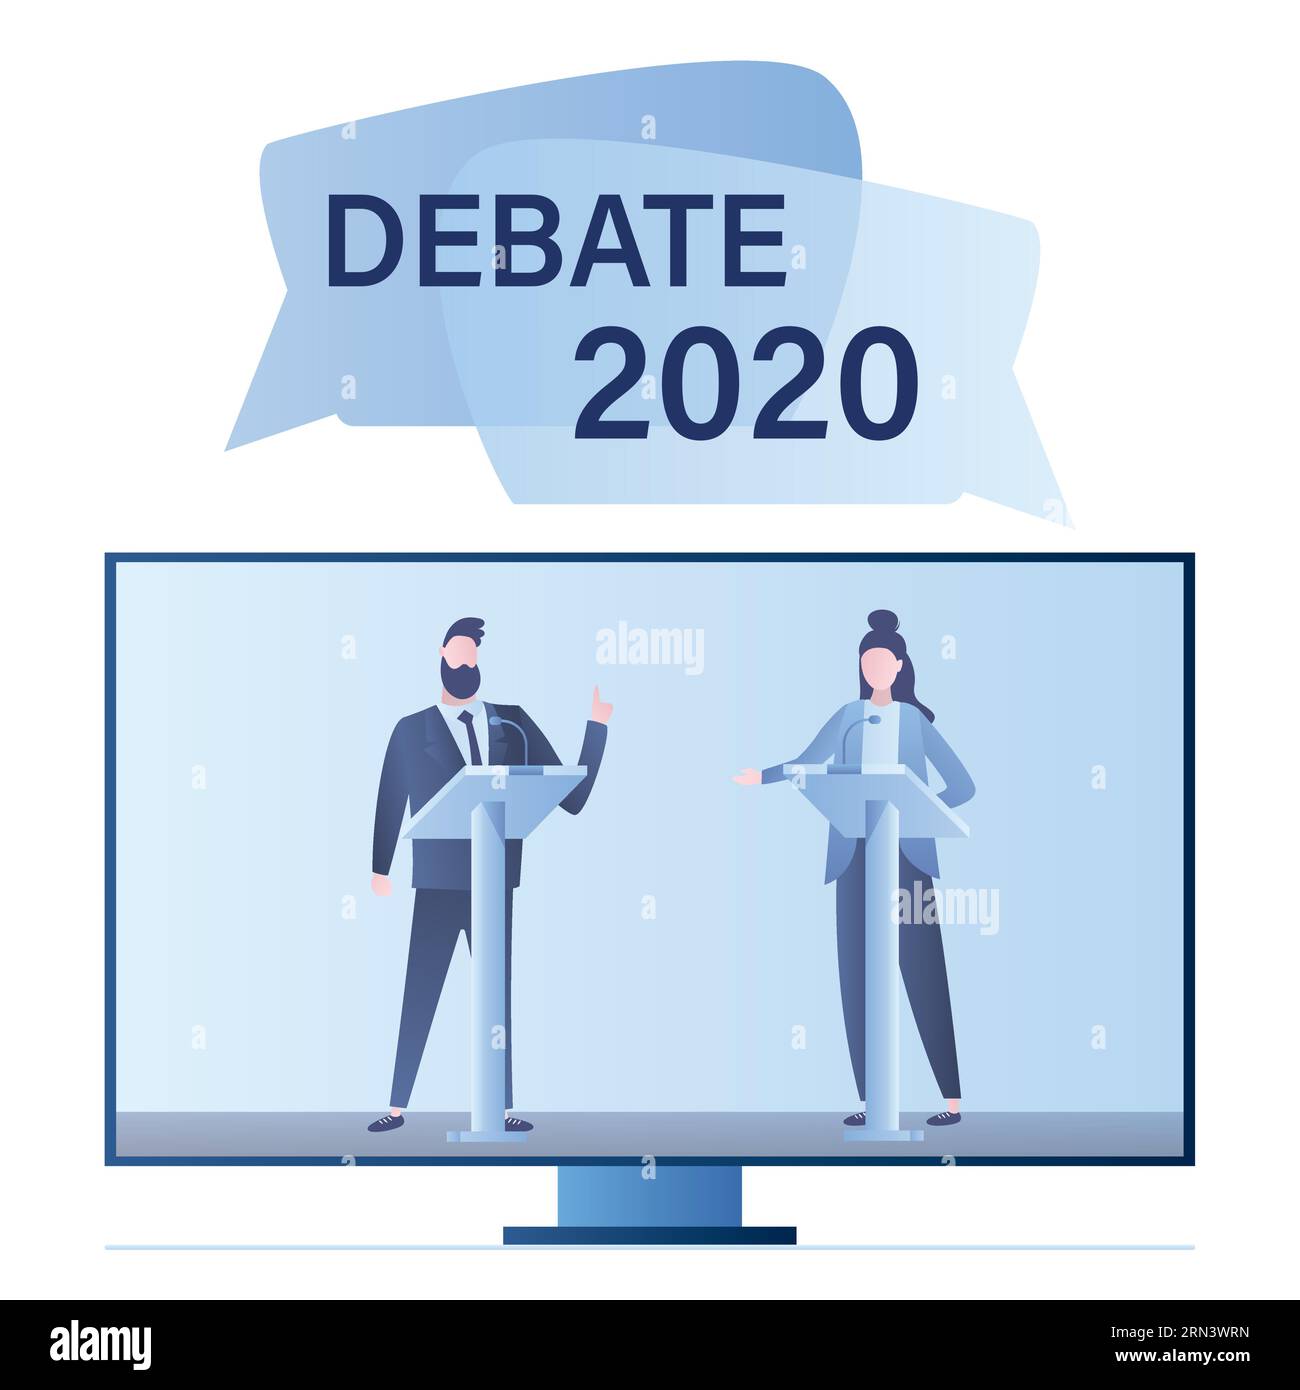 Offene Debatten 2020 vor der Abstimmung. Fernsehbildschirm mit Führern oppositioneller politischer Parteien, die intensive Diskussionen über öffentliche Debatten führen. Politischer Fernseher Stock Vektor